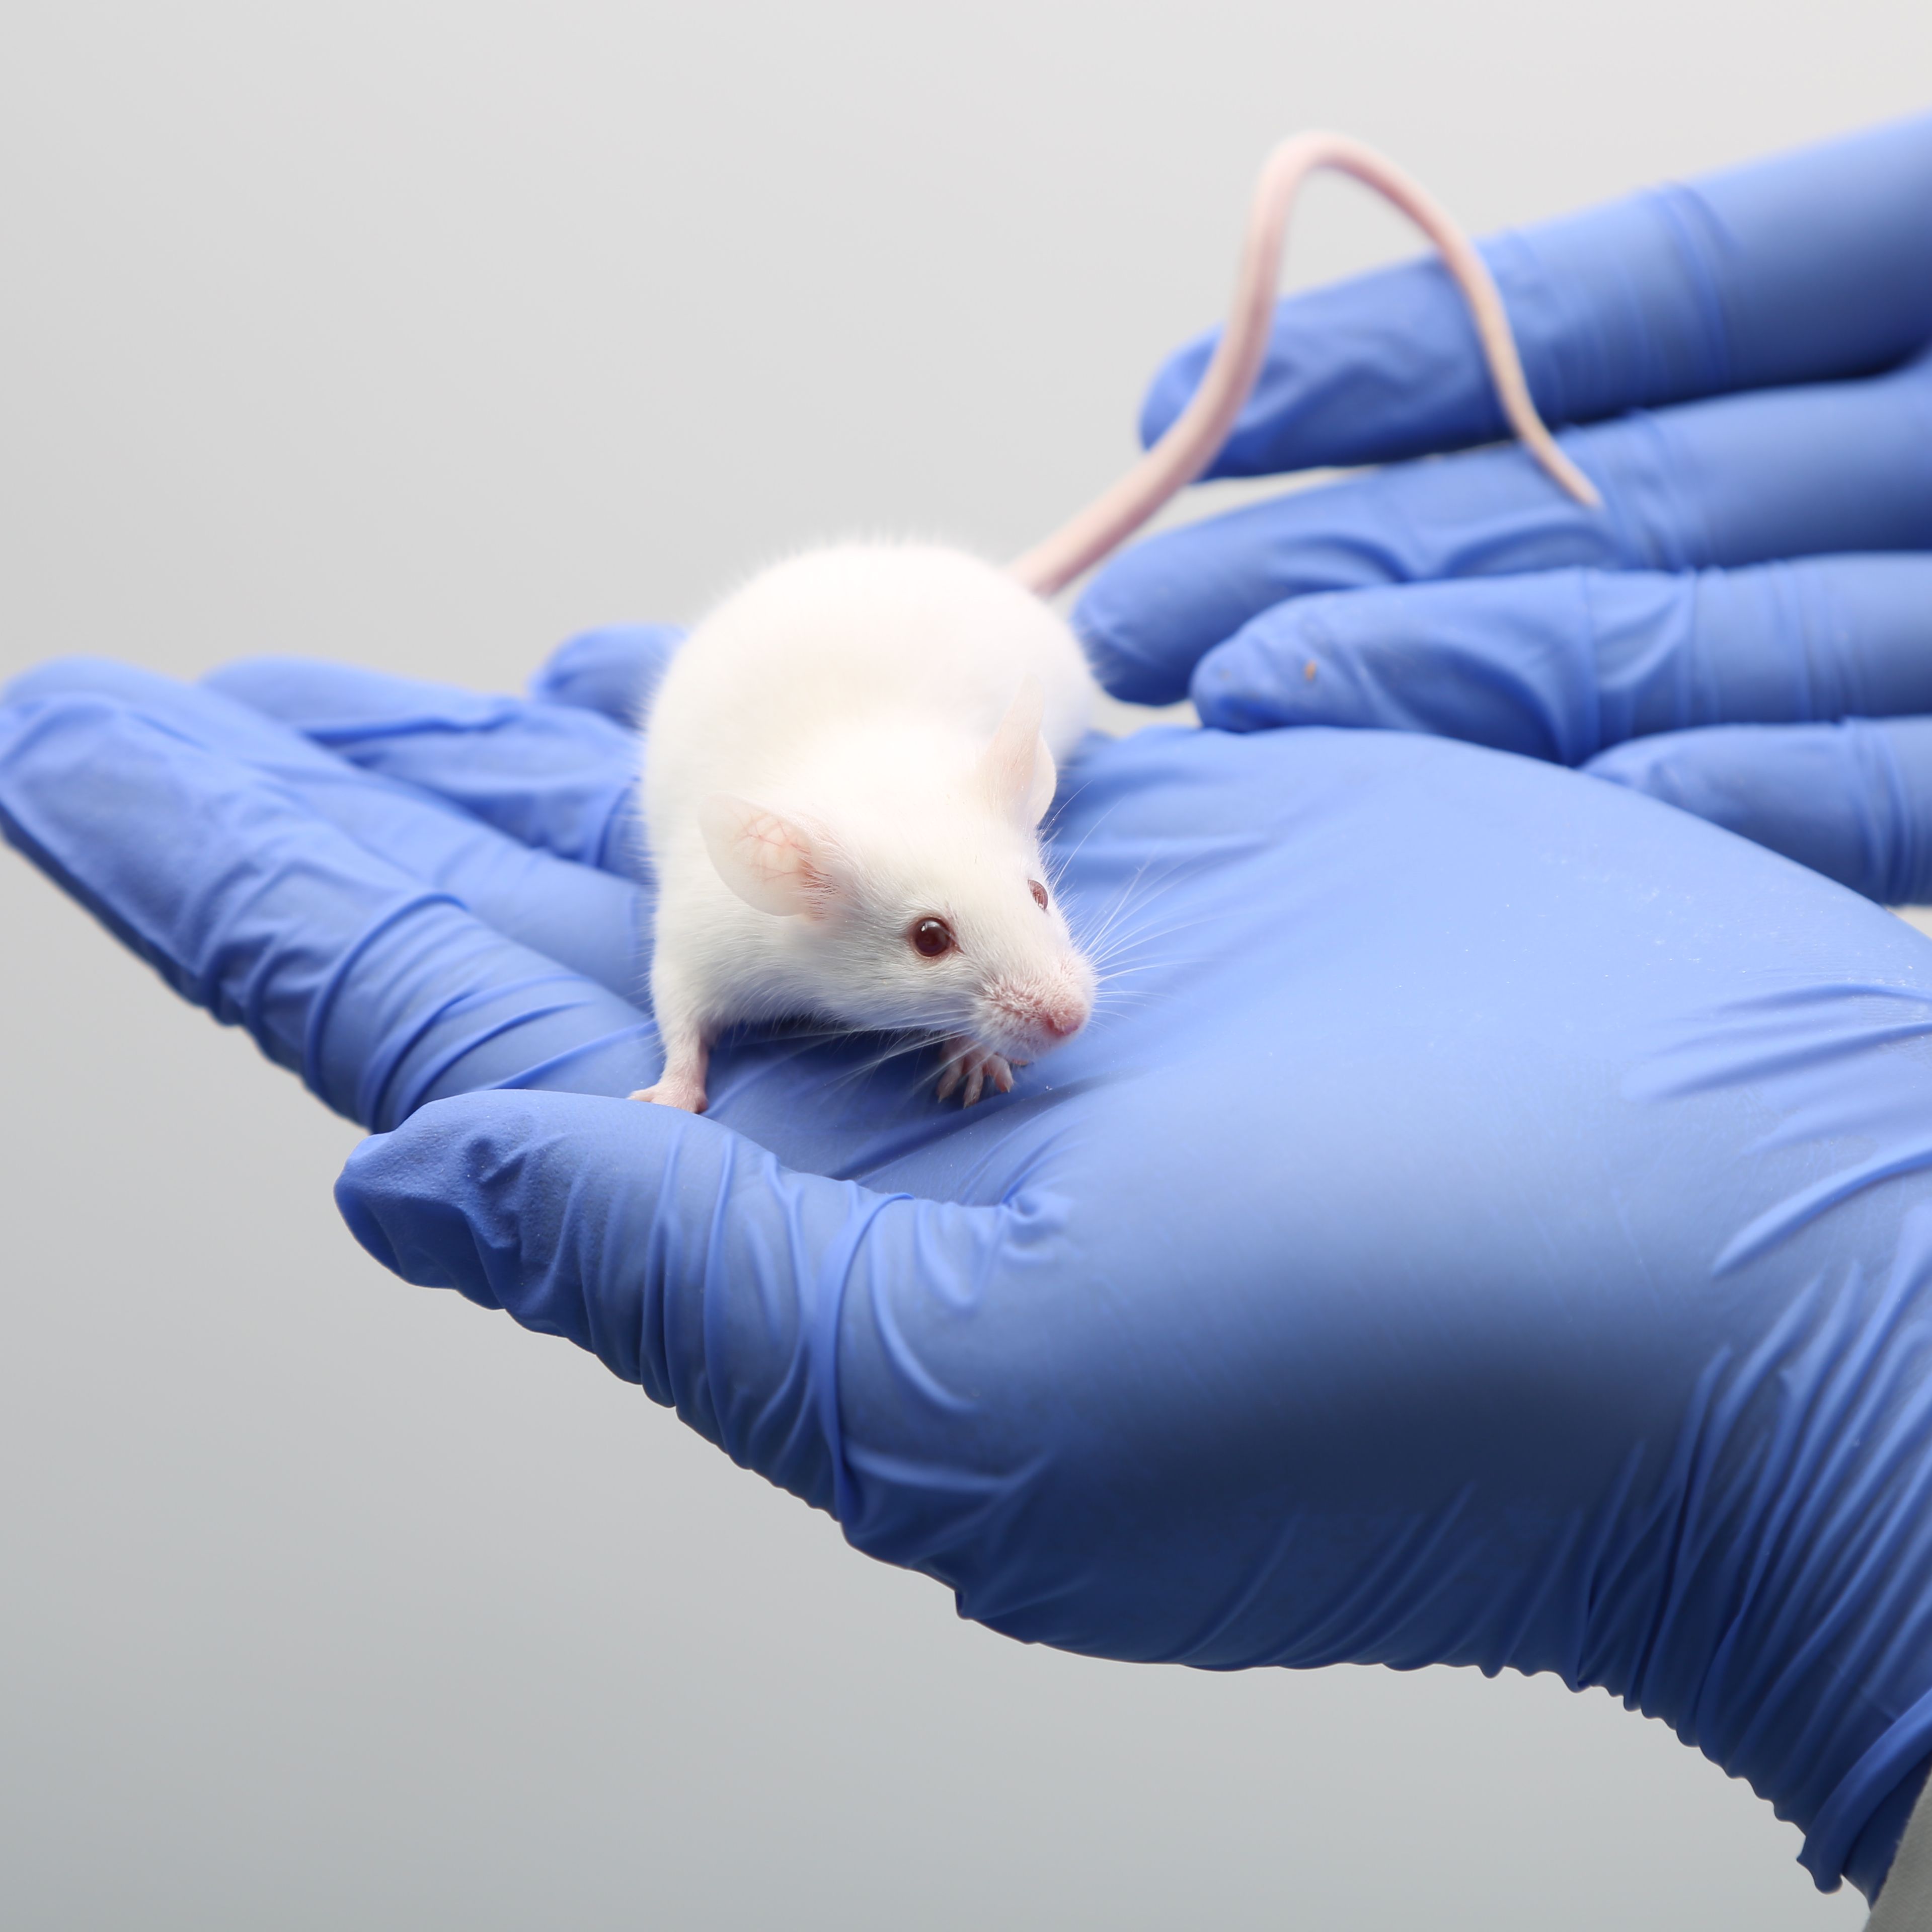 维通达肿瘤小鼠模型免费送